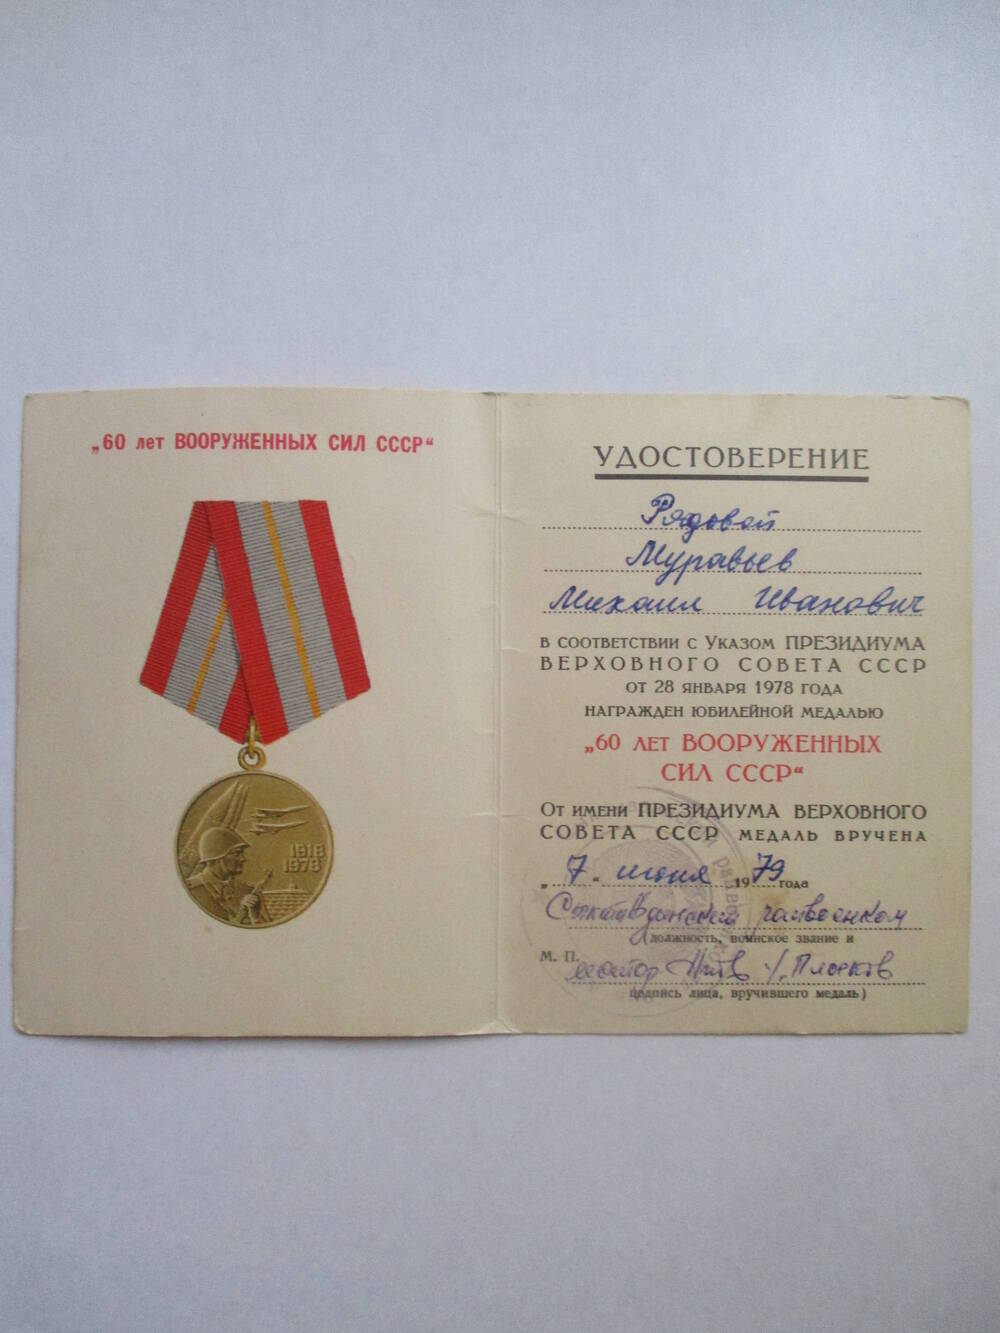 Удостоверение Муравьева Михаила Ивановича к юбилейной медали 60 лет Вооруженных сил СССР